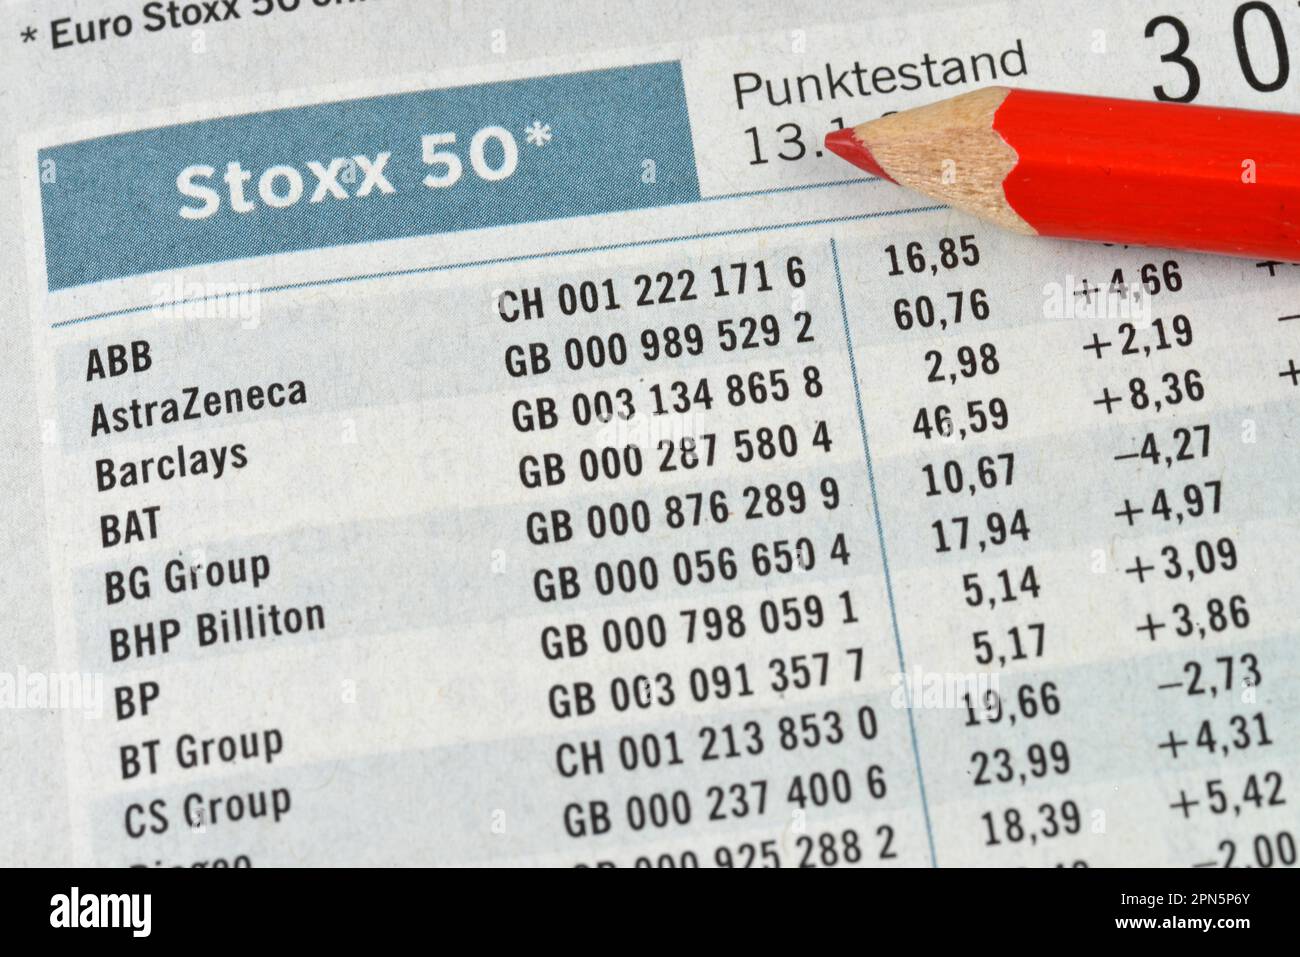 Newspaper, stock market section, stock market, euro Stoxx 50 Stock Photo